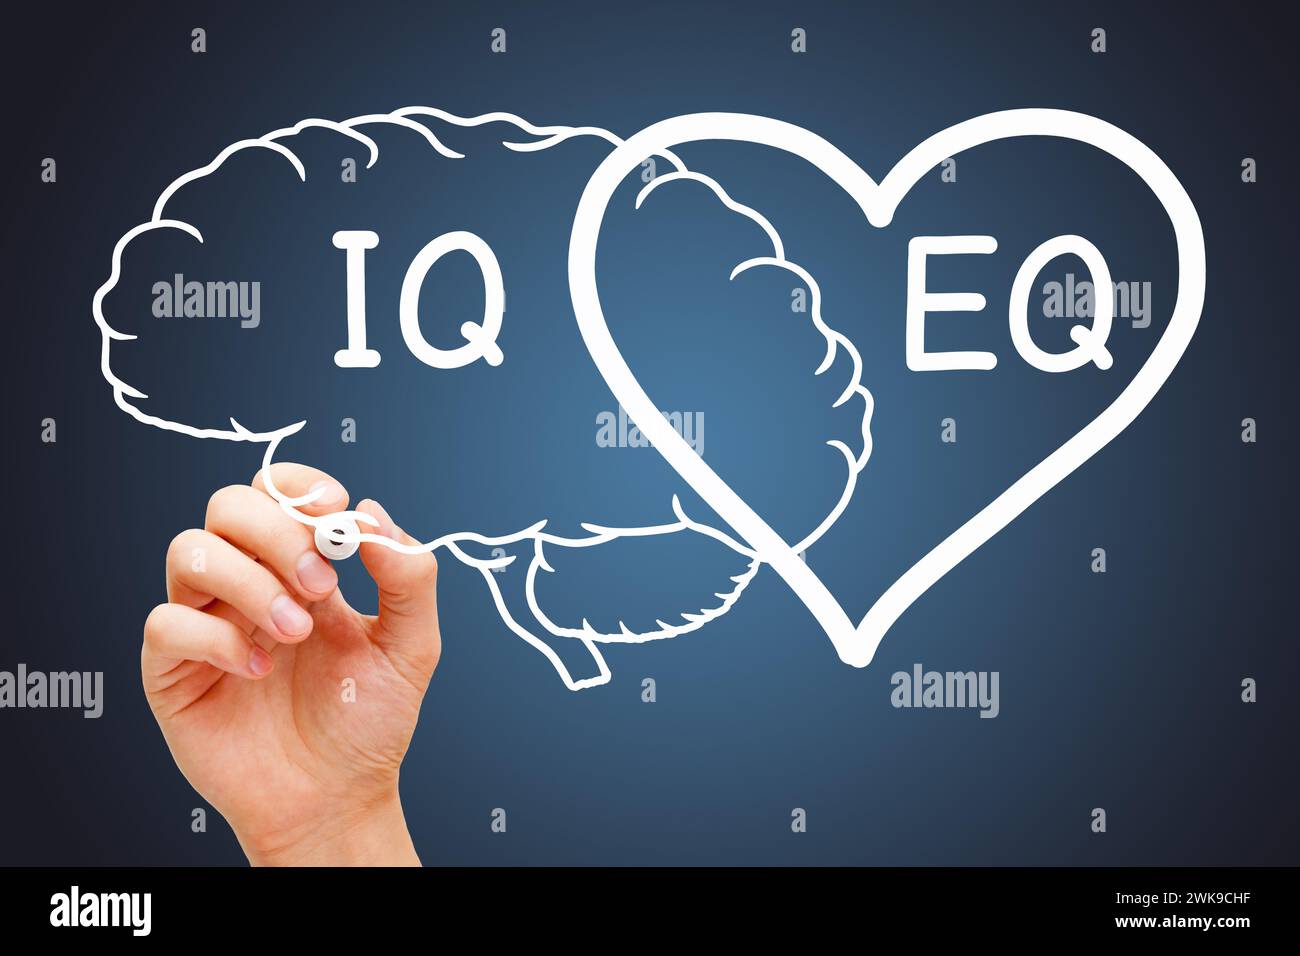 Handzeichnung eines Herz-Hirn-Konzepts über den EQ-Quotienten für emotionale Intelligenz und IQ-Intelligenz. Stockfoto